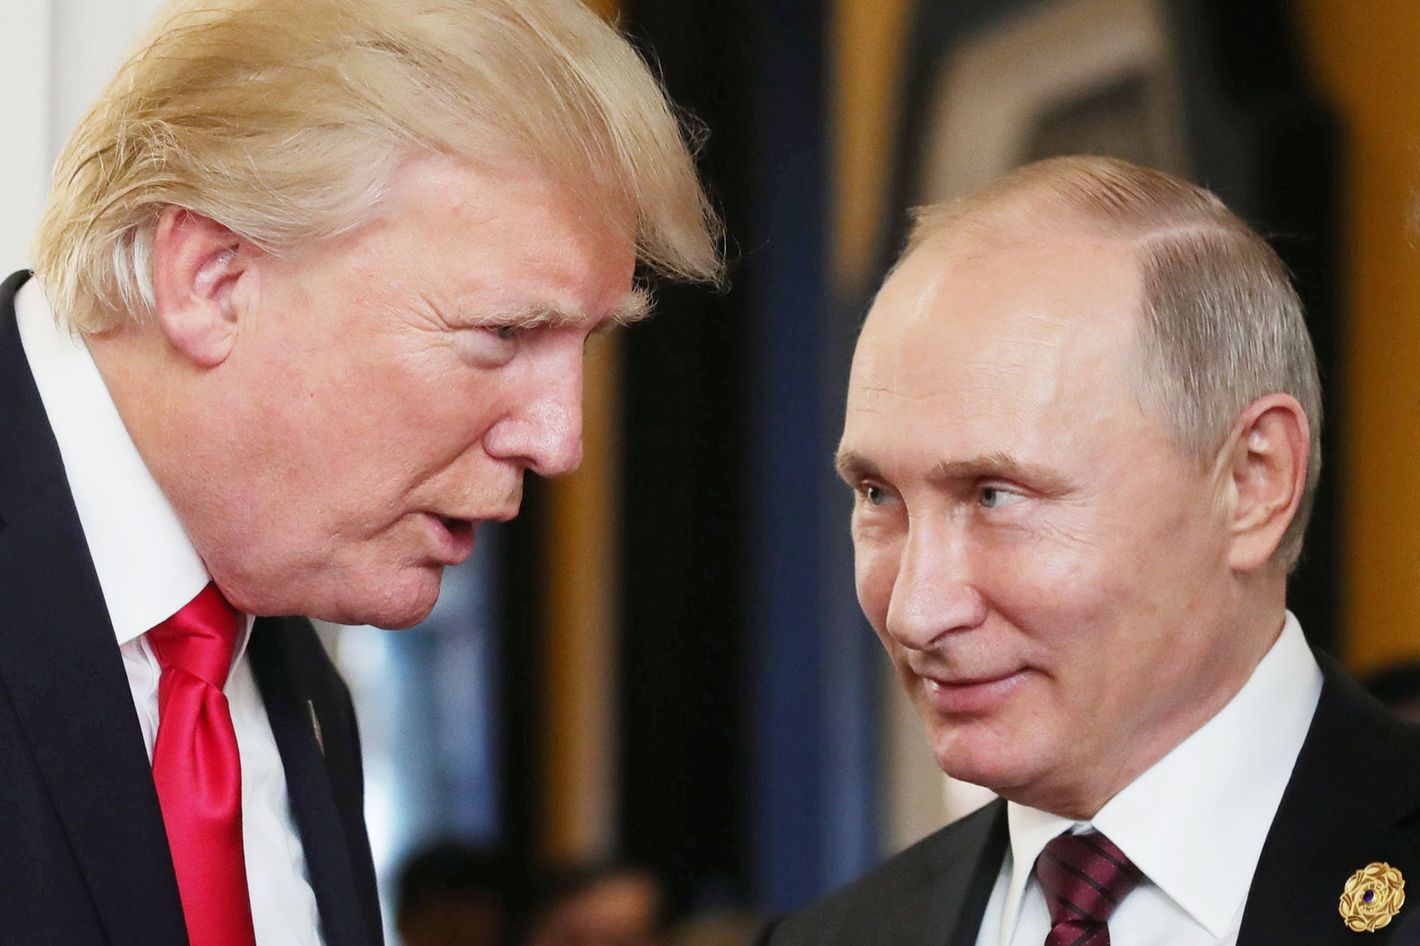 Трамп оценил встречу с Путиным